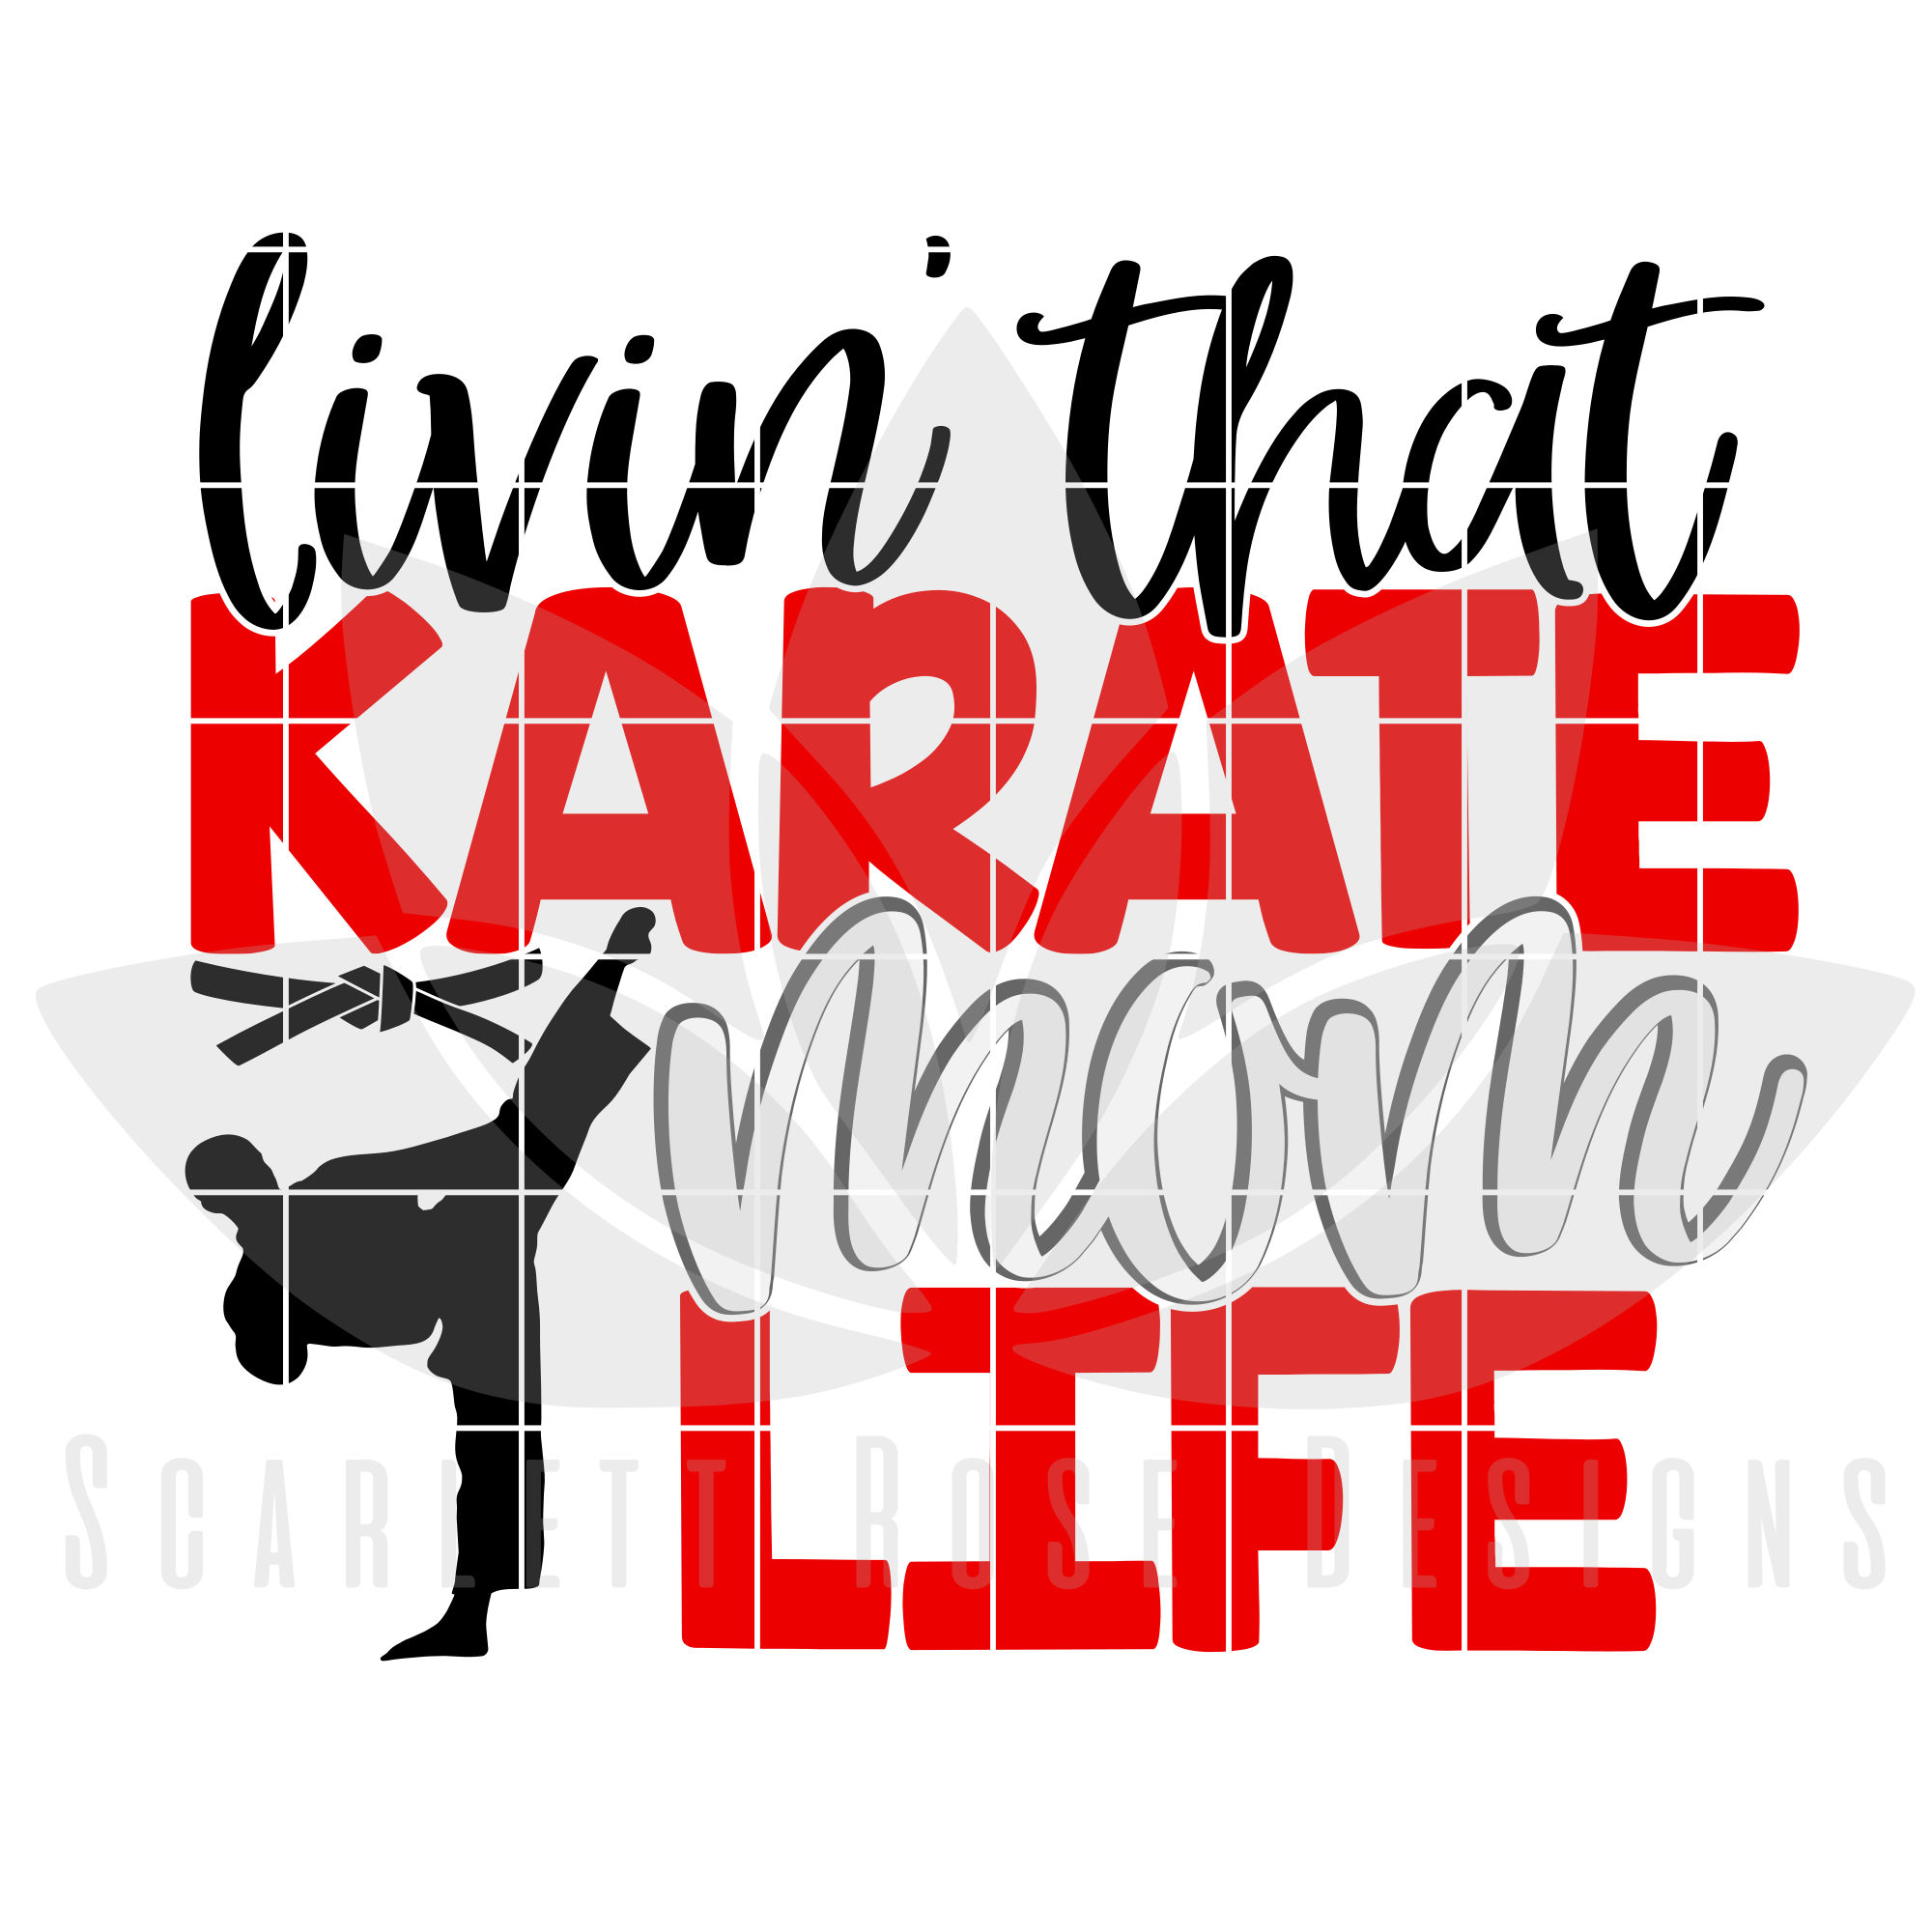 Download Karate Mom SVG, Livin' That Karate Mom Life SVG cut file - Scarlett Rose Designs